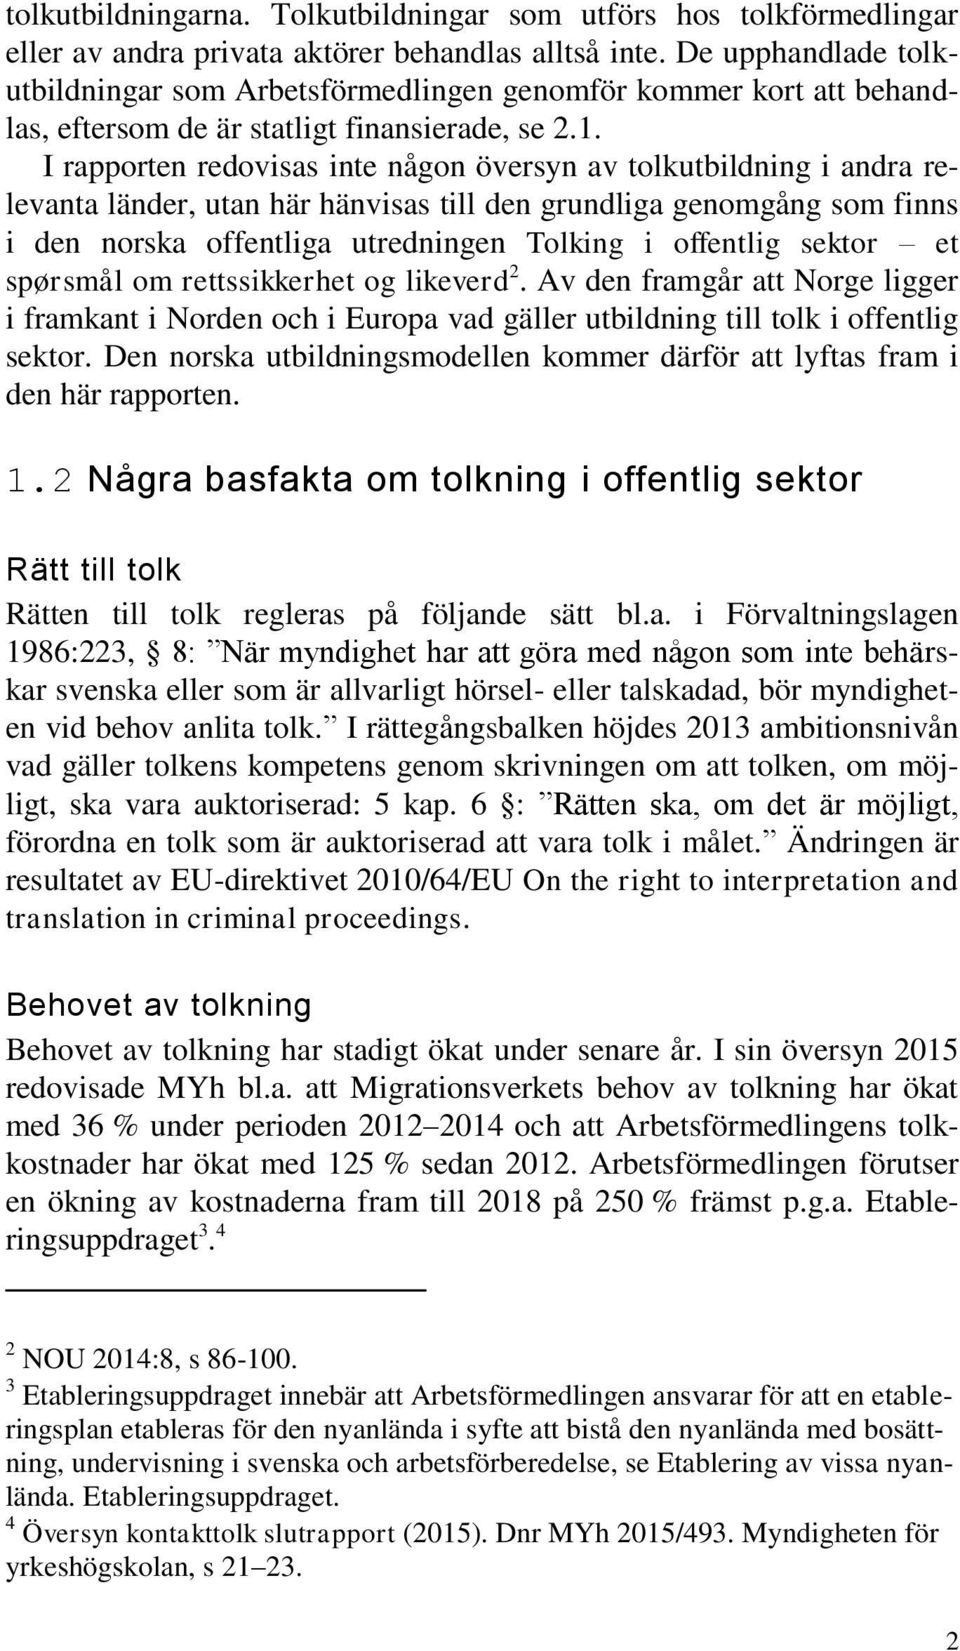 I rapporten redovisas inte någon översyn av tolkutbildning i andra relevanta länder, utan här hänvisas till den grundliga genomgång som finns i den norska offentliga utredningen Tolking i offentlig